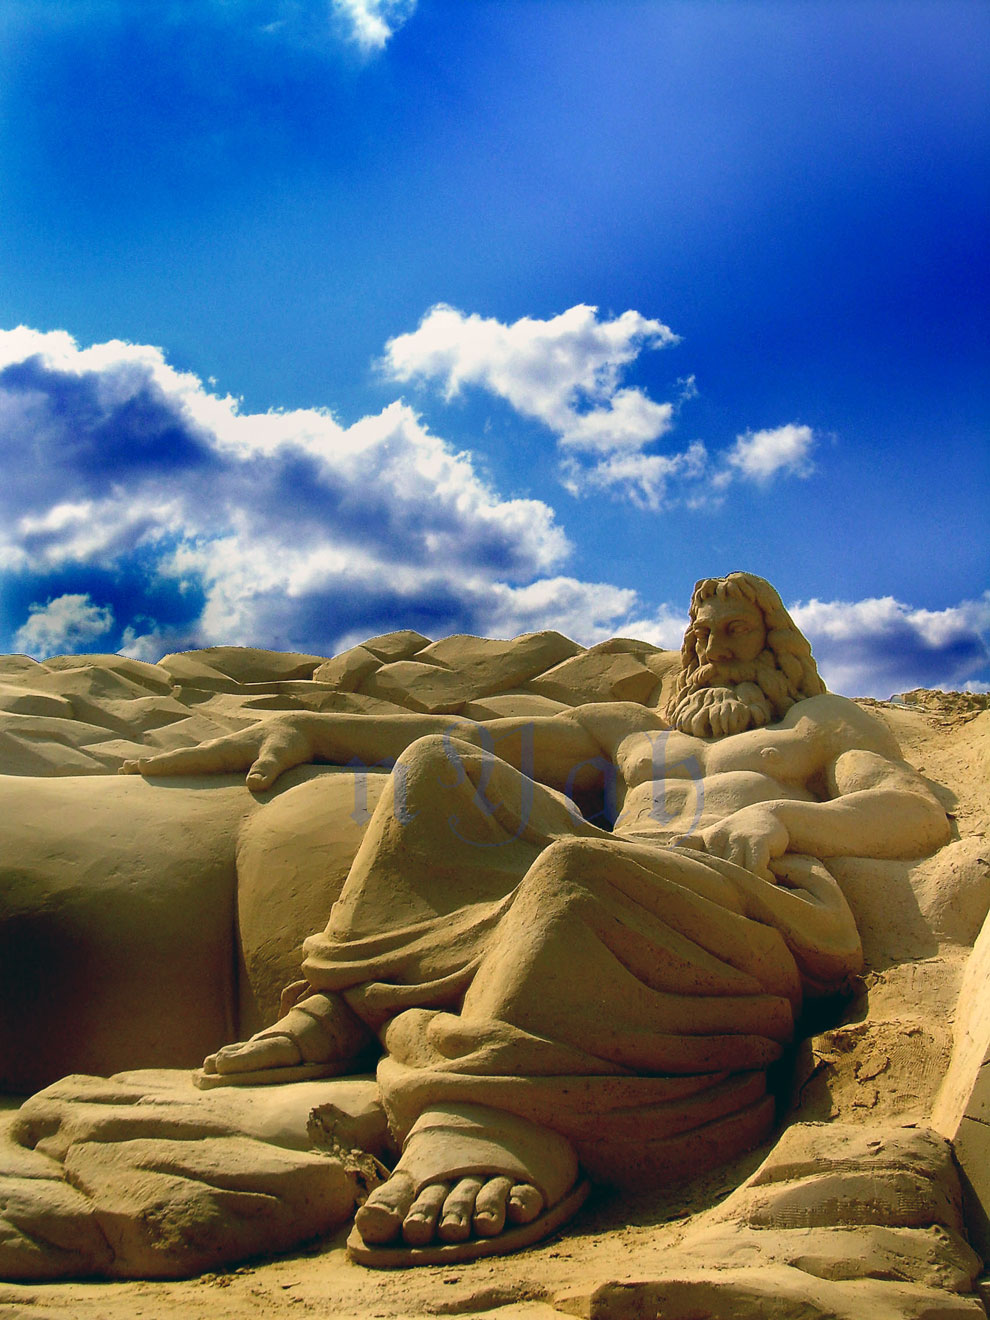 Удивительные песчаные скульптуры из разных мест